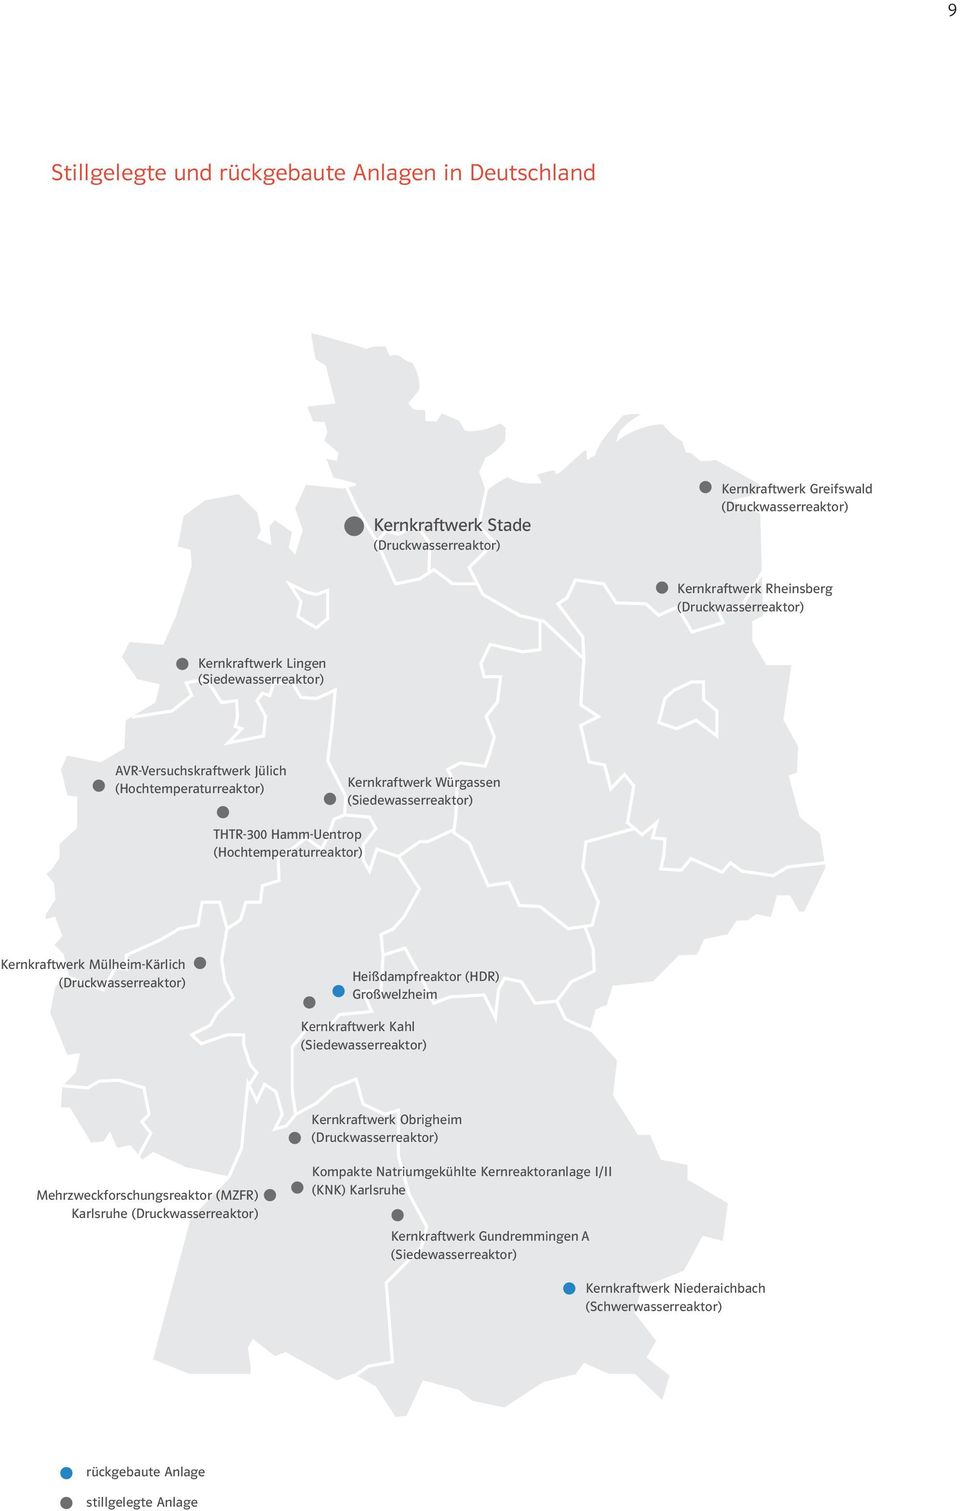 Mülheim-Kärlich (Druckwasserreaktor) Heißdampfreaktor (HDR) Großwelzheim Kernkraftwerk Kahl (Siedewasserreaktor) Kernkraftwerk Obrigheim (Druckwasserreaktor) Mehrzweckforschungsreaktor (MZFR)